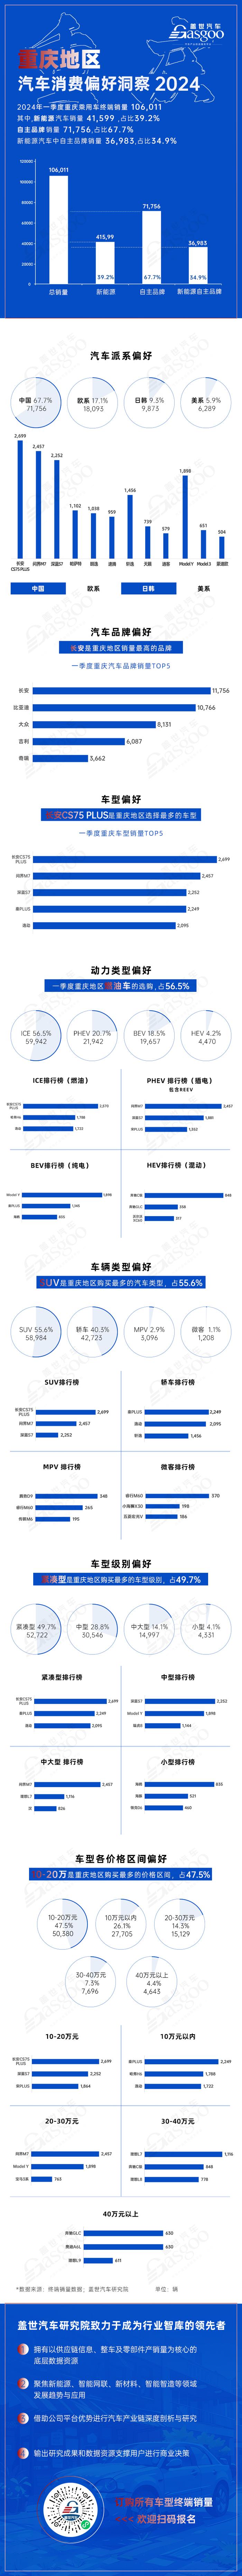 自主品牌雄起，SUV畅销 | 重庆地区一季度汽车消费偏好洞察